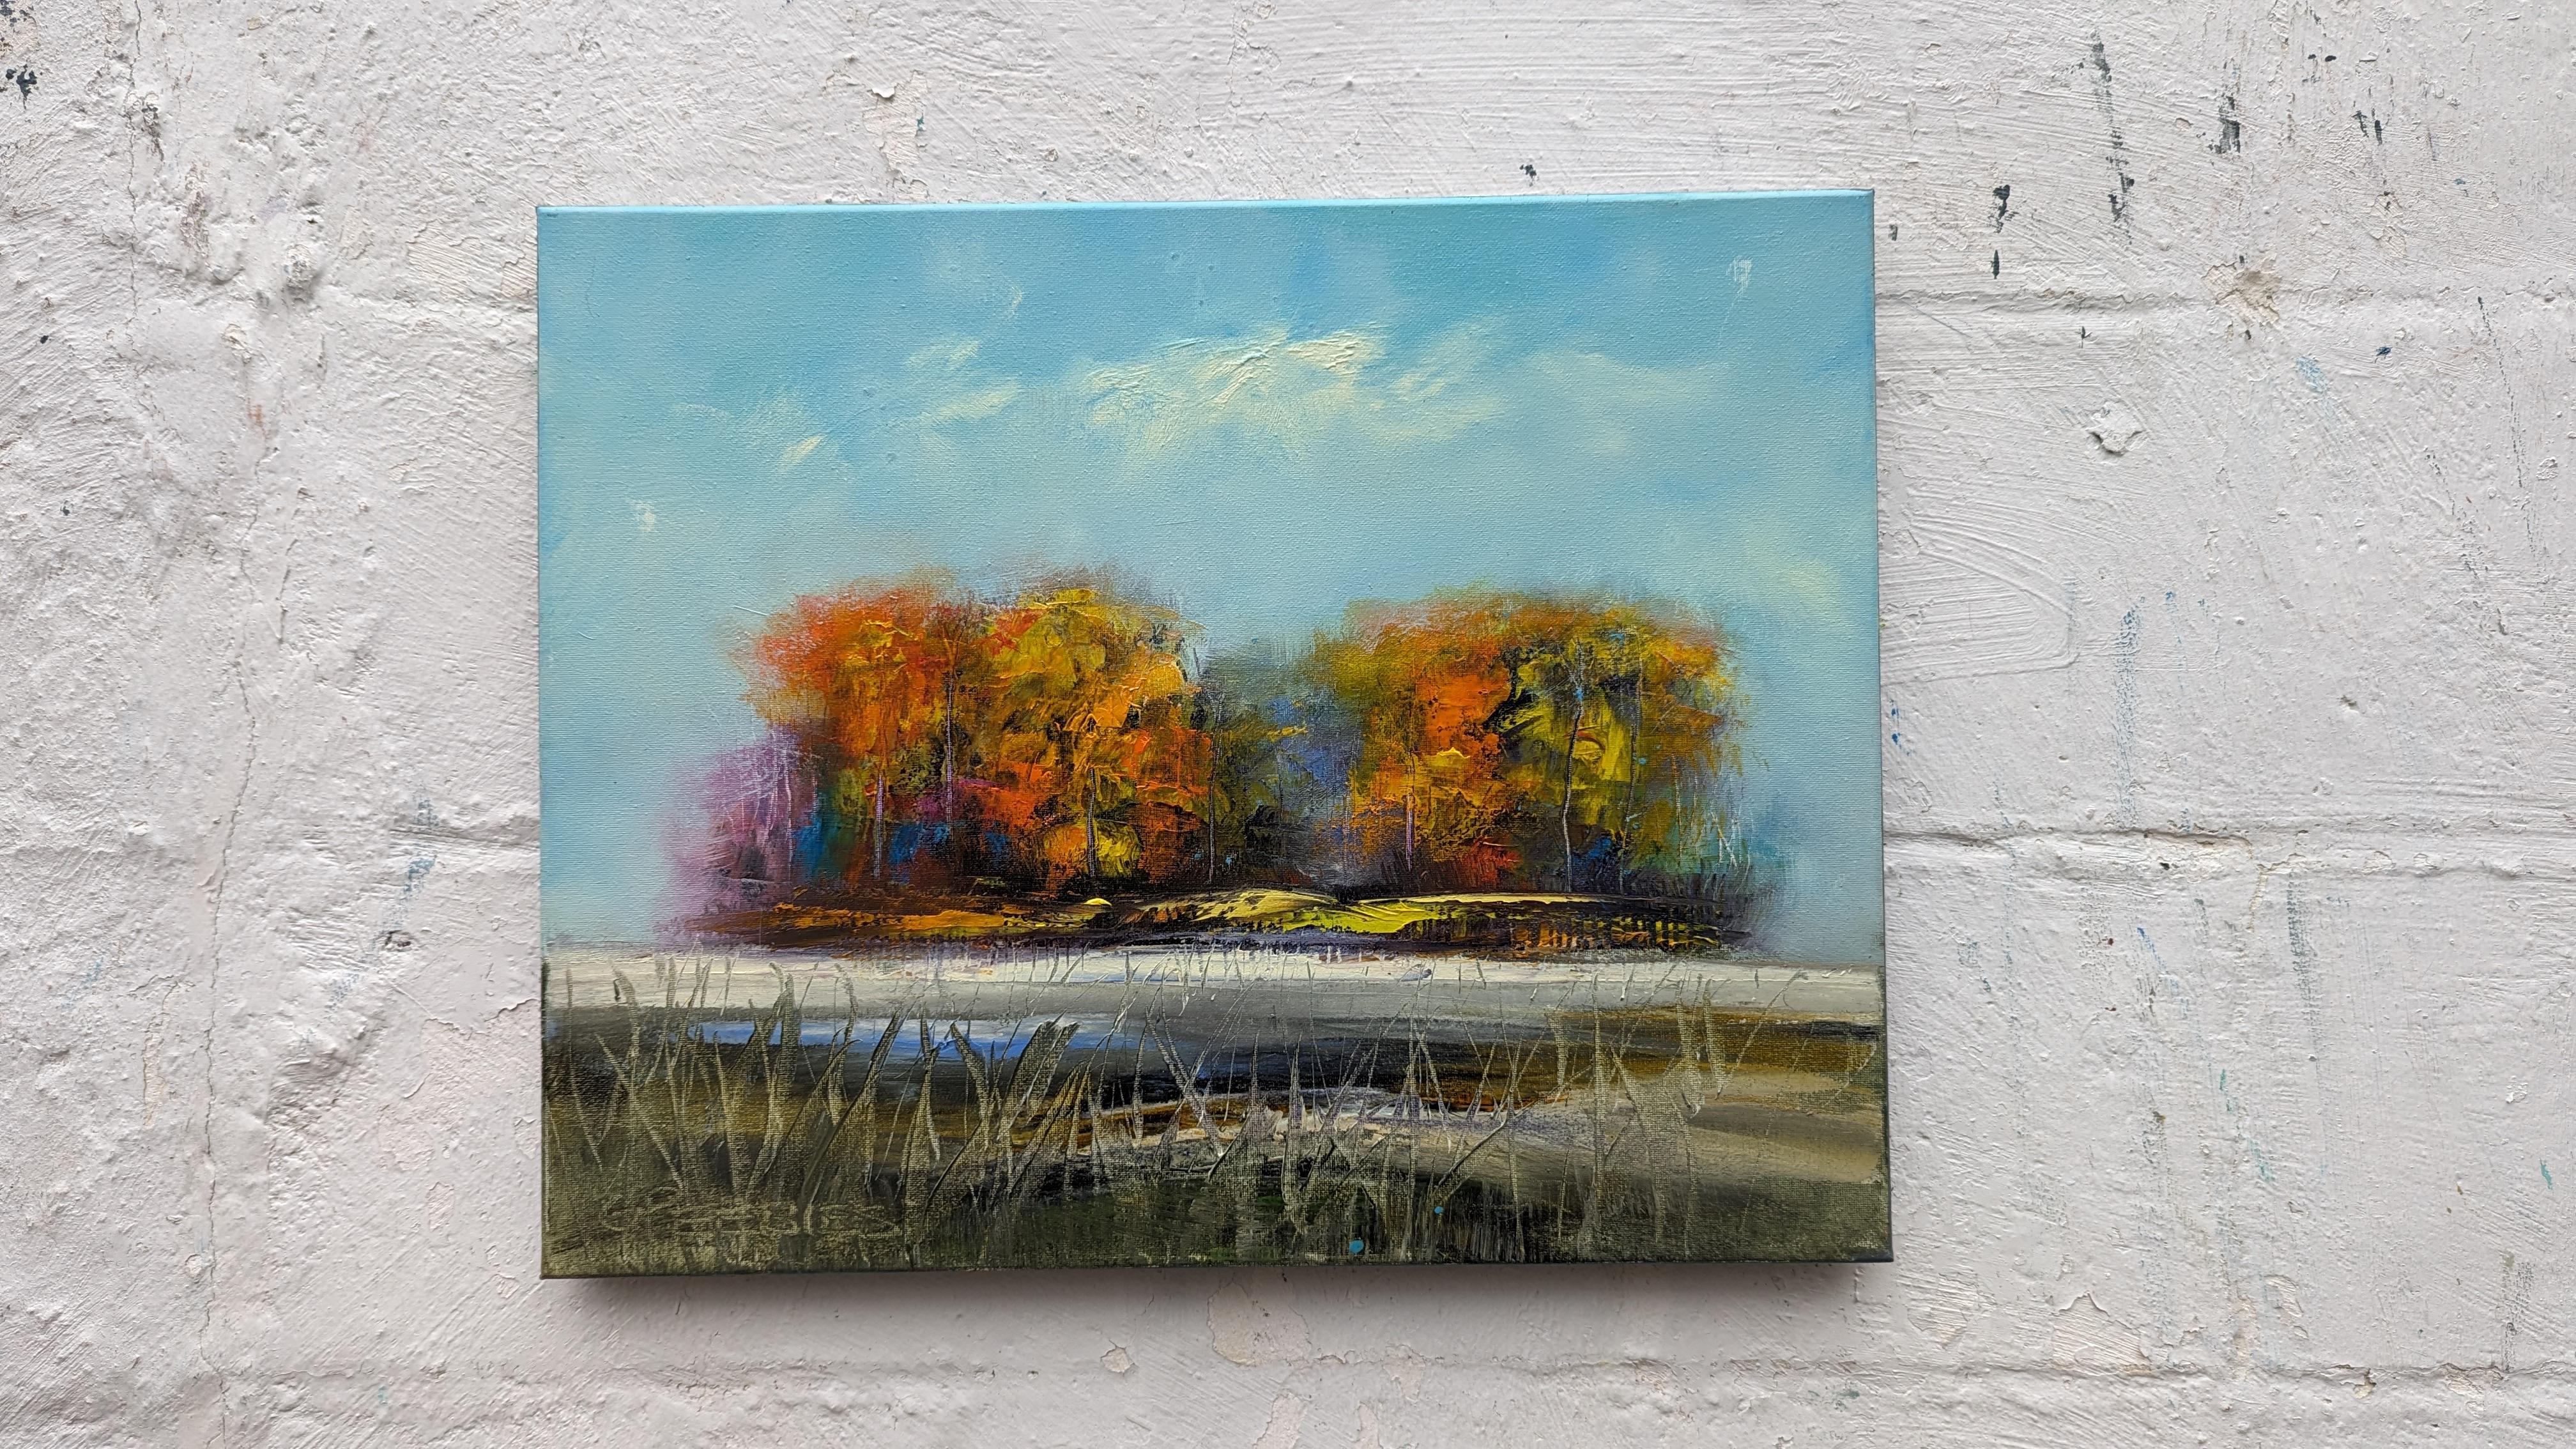 <p>Kommentare des KünstlersUnter dem blauen Himmel zeigt ein Dickicht von Bäumen sein herbstlich gefärbtes Laub.<br> Dünne Wolken in der Ferne und zarte Gräser im Vordergrund verleihen der Szene Tiefe. In verschiedenen Techniken gemalt, vermitteln